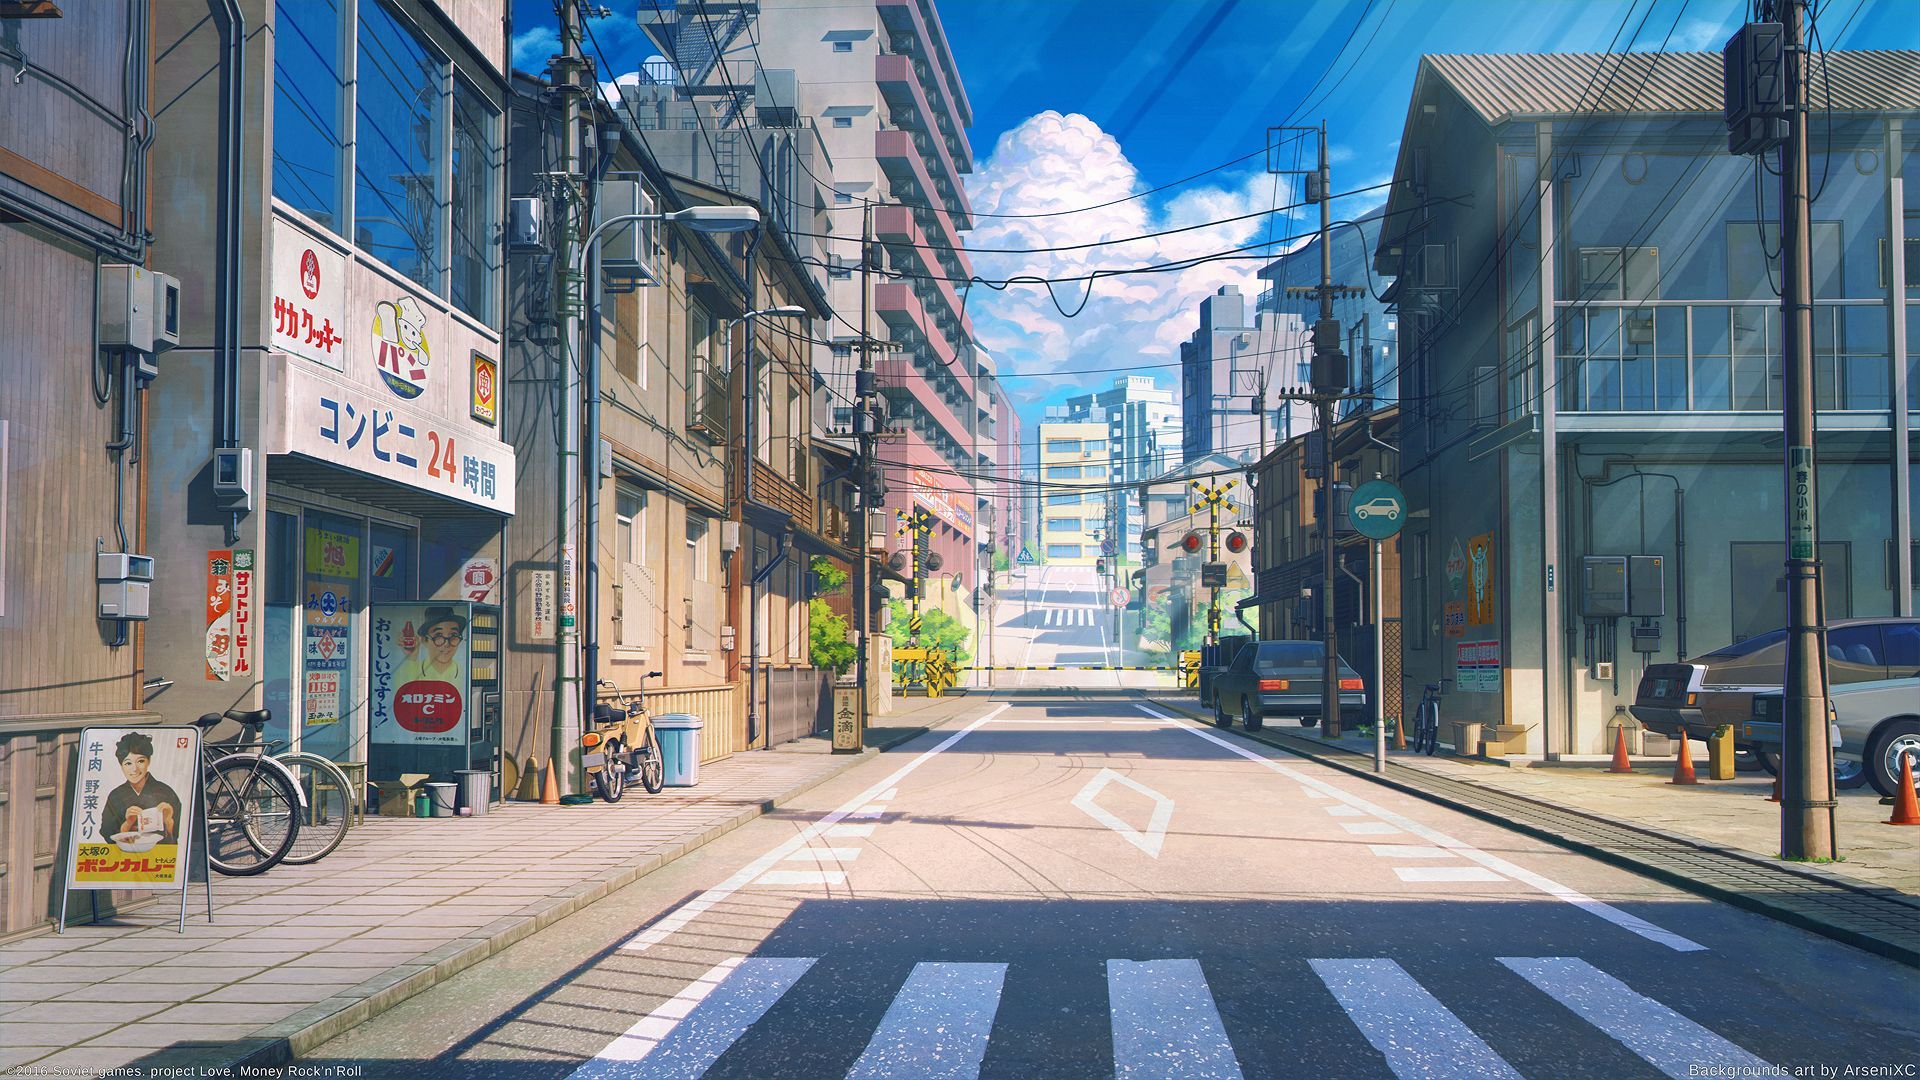 Tận hưởng những khung cảnh đẹp tuyệt vời của thành phố Tokyo qua những bức hình HD anime Tokyo city sống động. Được chụp từ các góc nhìn khác nhau, chúng sẽ giúp bạn đắm chìm trong thế giới phim hoạt hình quyến rũ và đầy màu sắc.